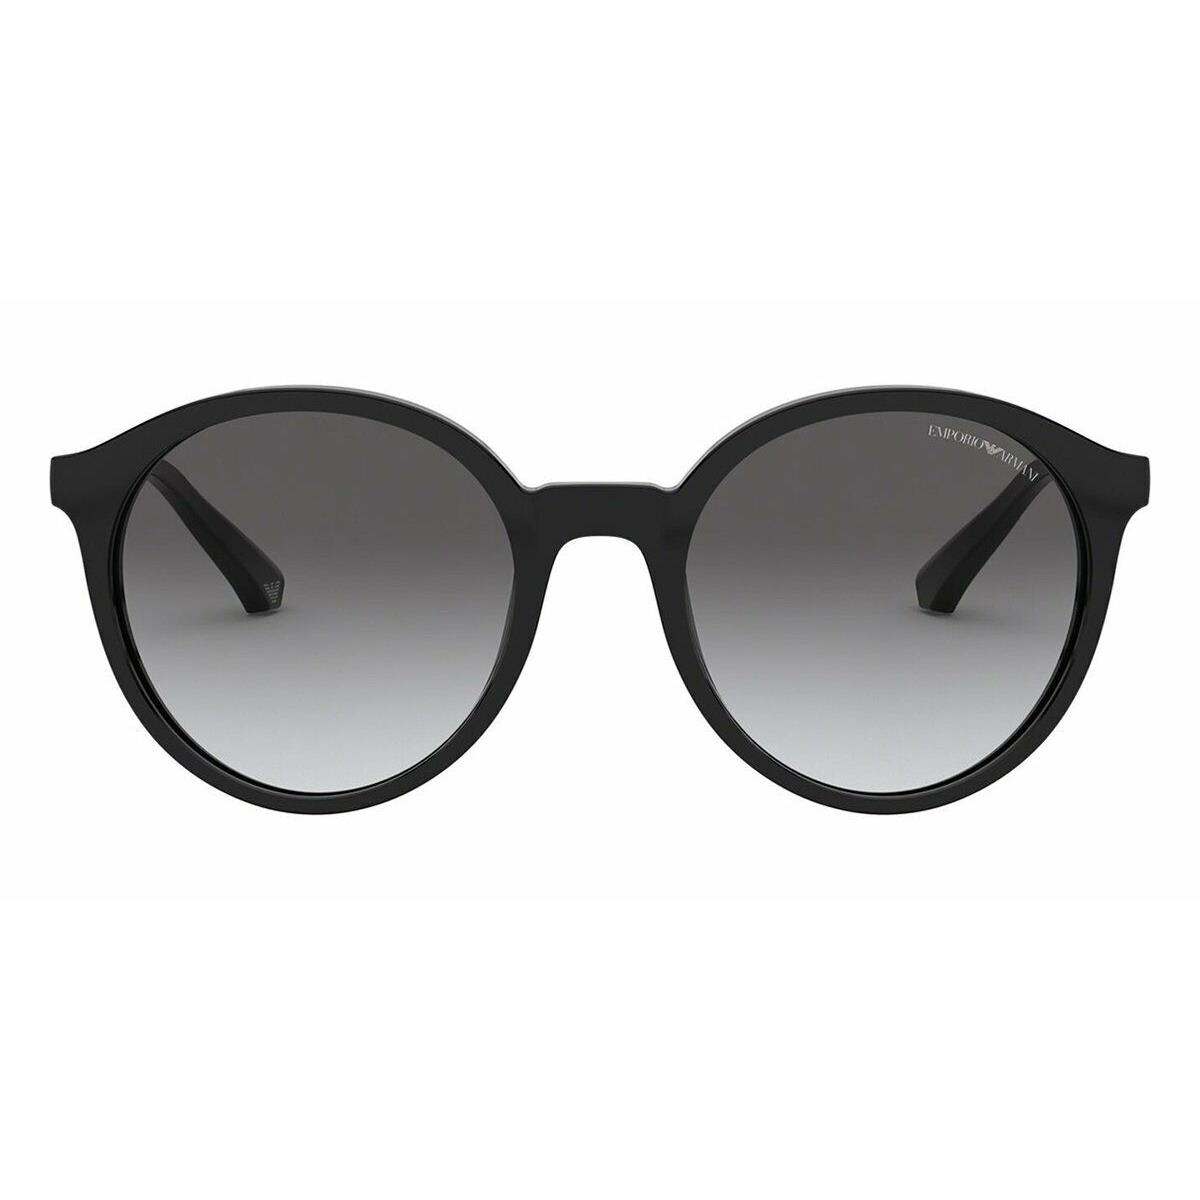 Giorgio Armani Sunglasses EA4134 5017/11 Black/silver Frames Gray 53mm ST